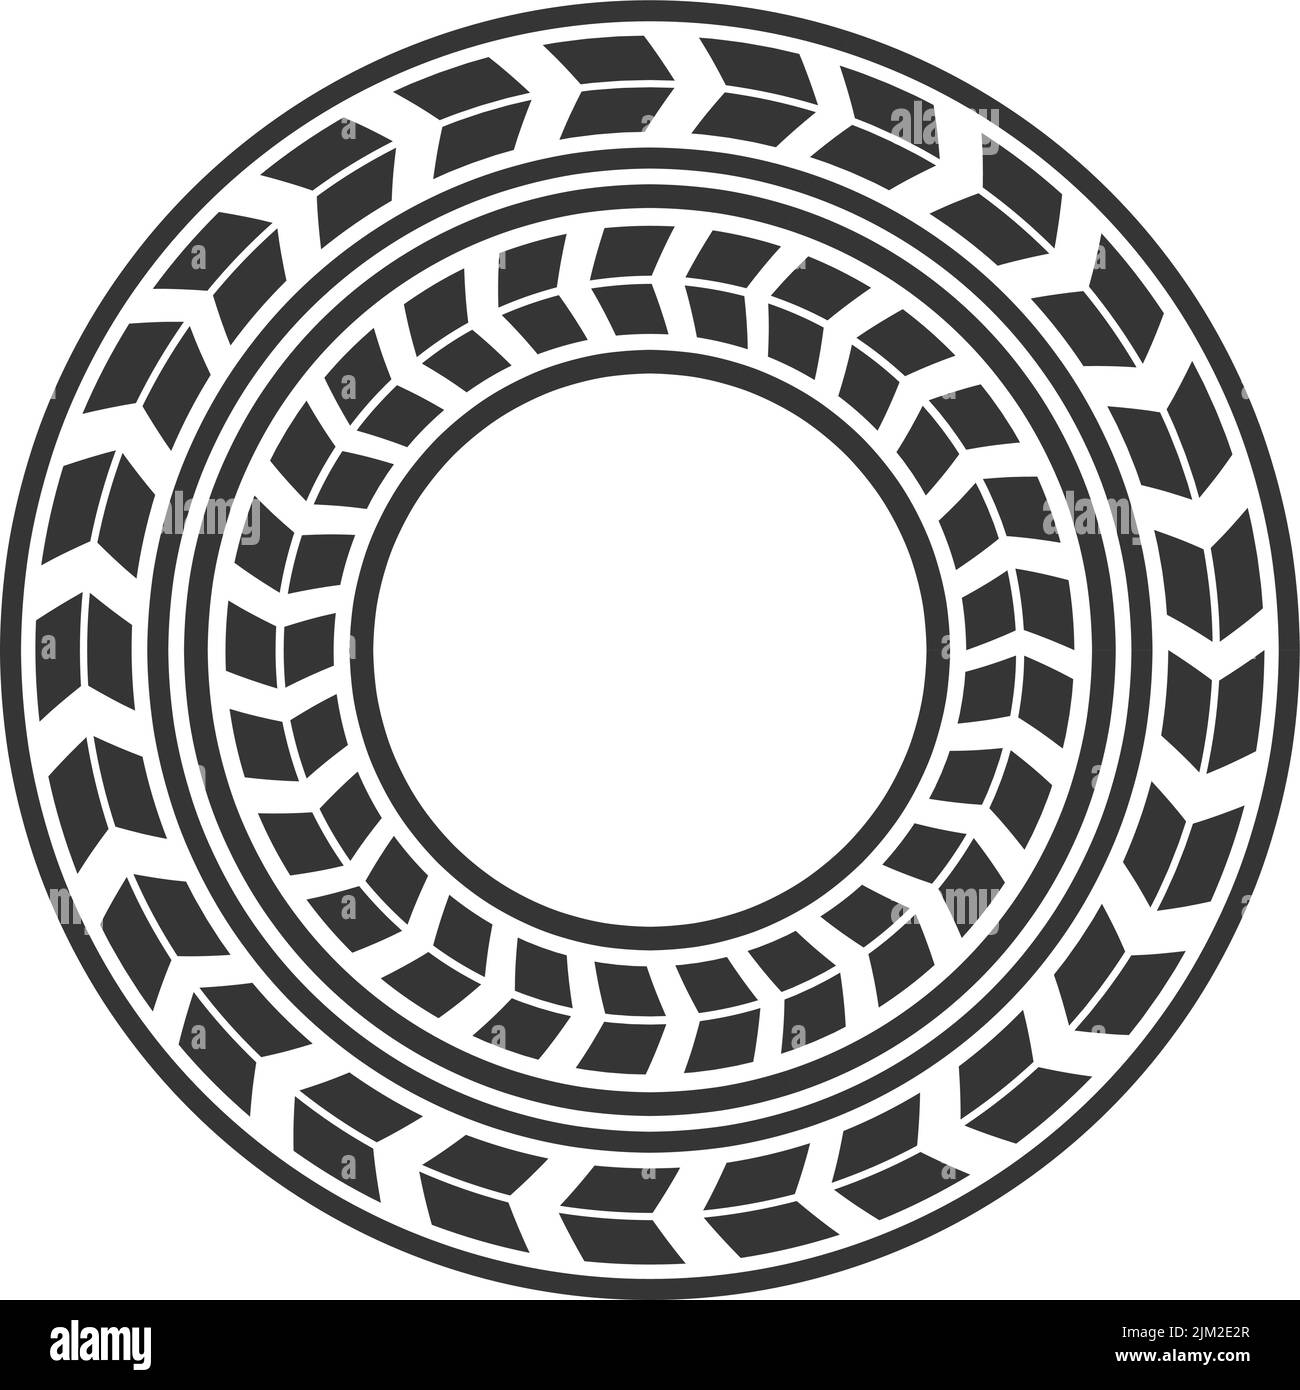 Ein einfaches, kreisförmiges Reifenprofil-Symbol in Schwarz – ideal für Logos der Automobilindustrie Stock Vektor